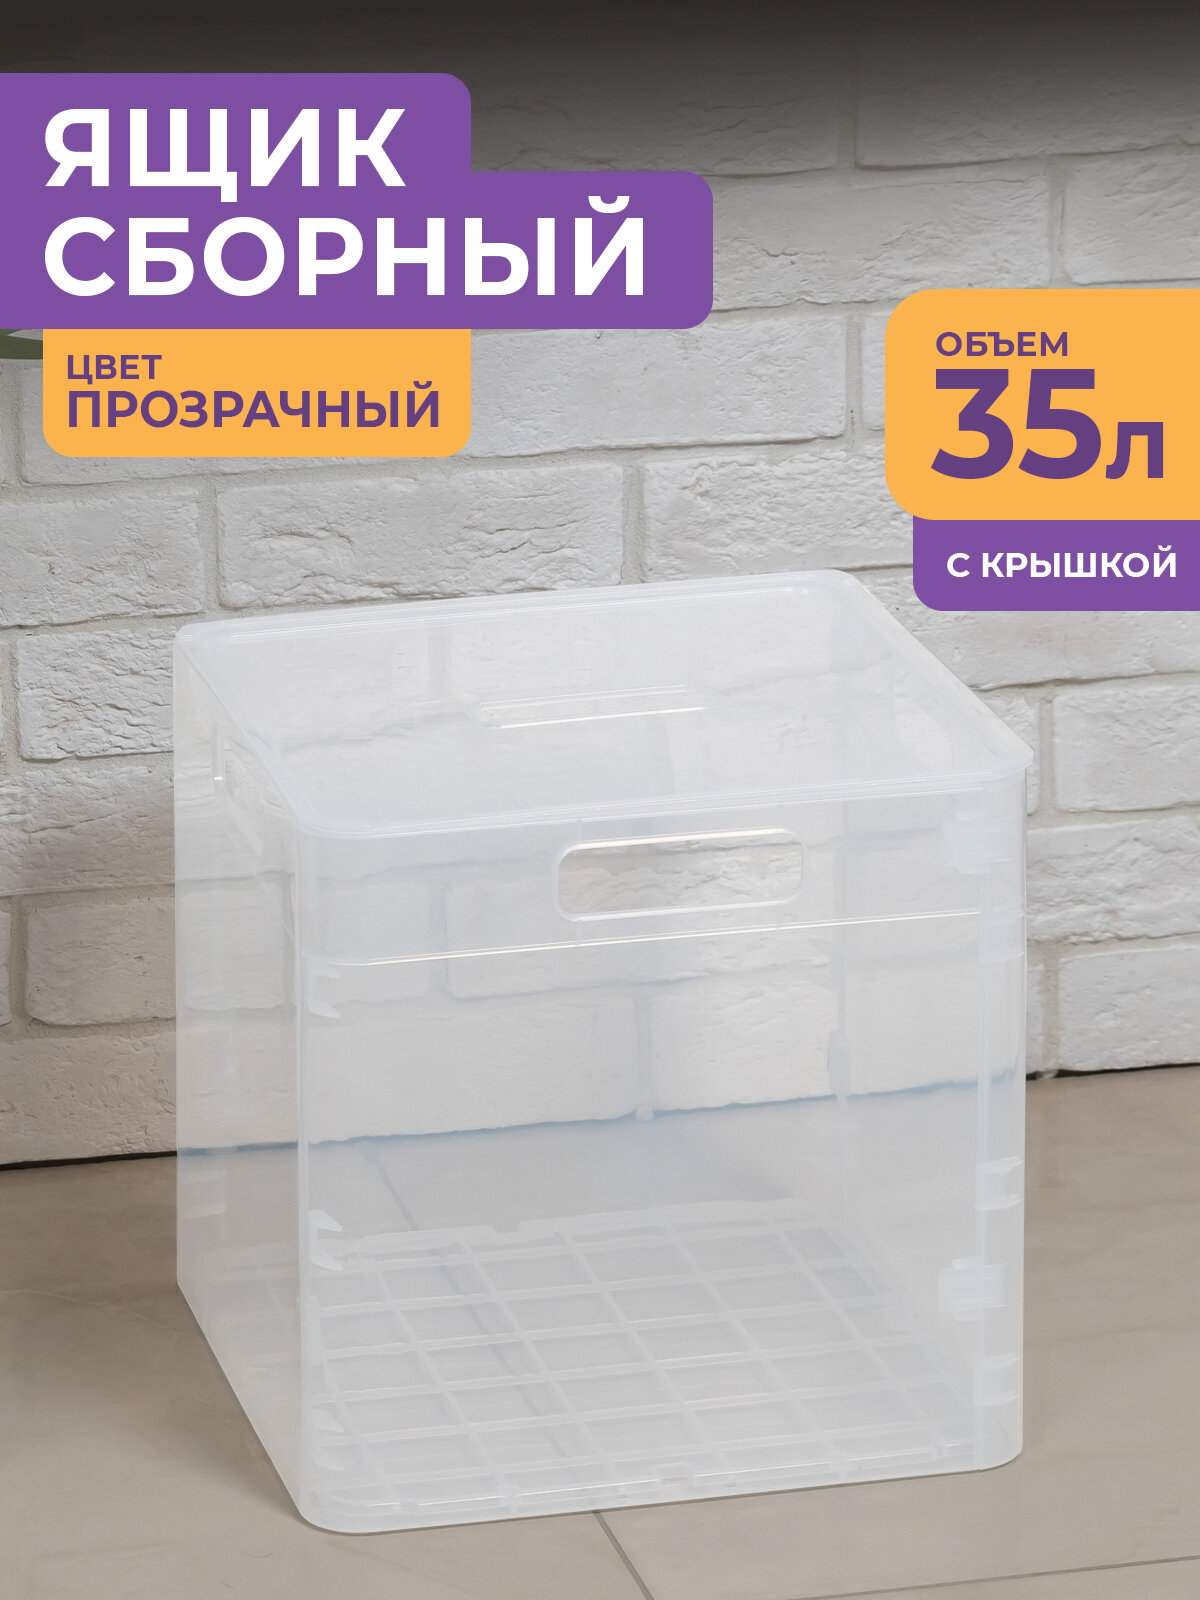 Контейнер для хранения вещей с крышкой складной 35л цвет прозрачный / пластиковая коробка сборная для лекарств игрушек